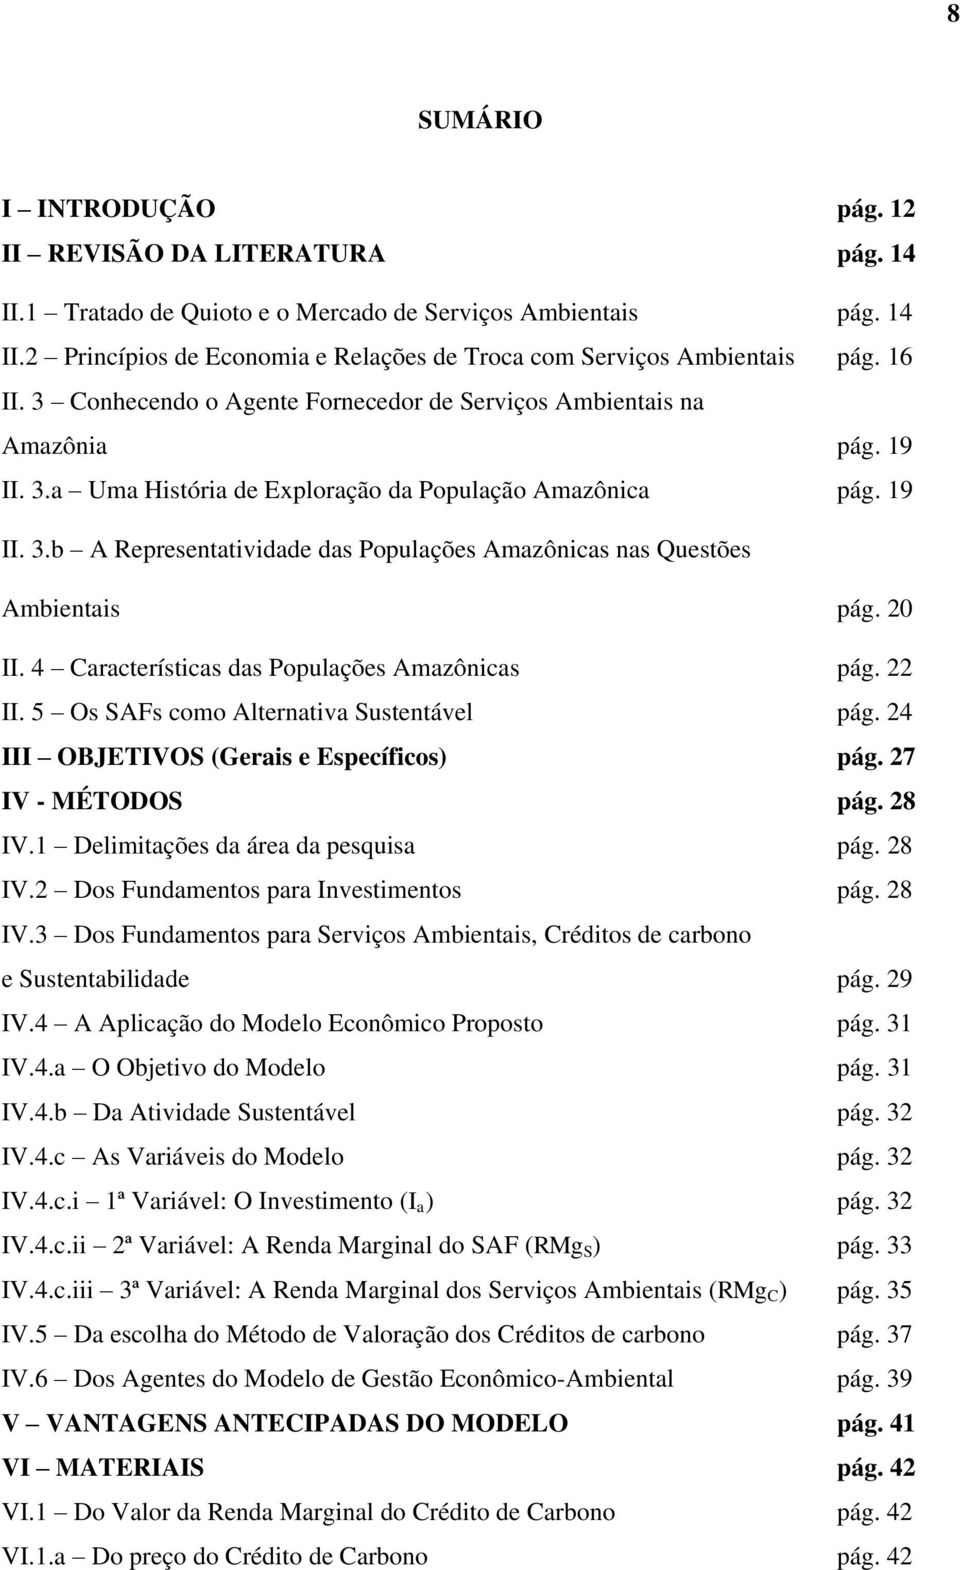 20 II. 4 Características das Populações Amazônicas pág. 22 II. 5 Os SAFs como Alternativa Sustentável pág. 24 III OBJETIVOS (Gerais e Específicos) pág. 27 IV - MÉTODOS pág. 28 IV.